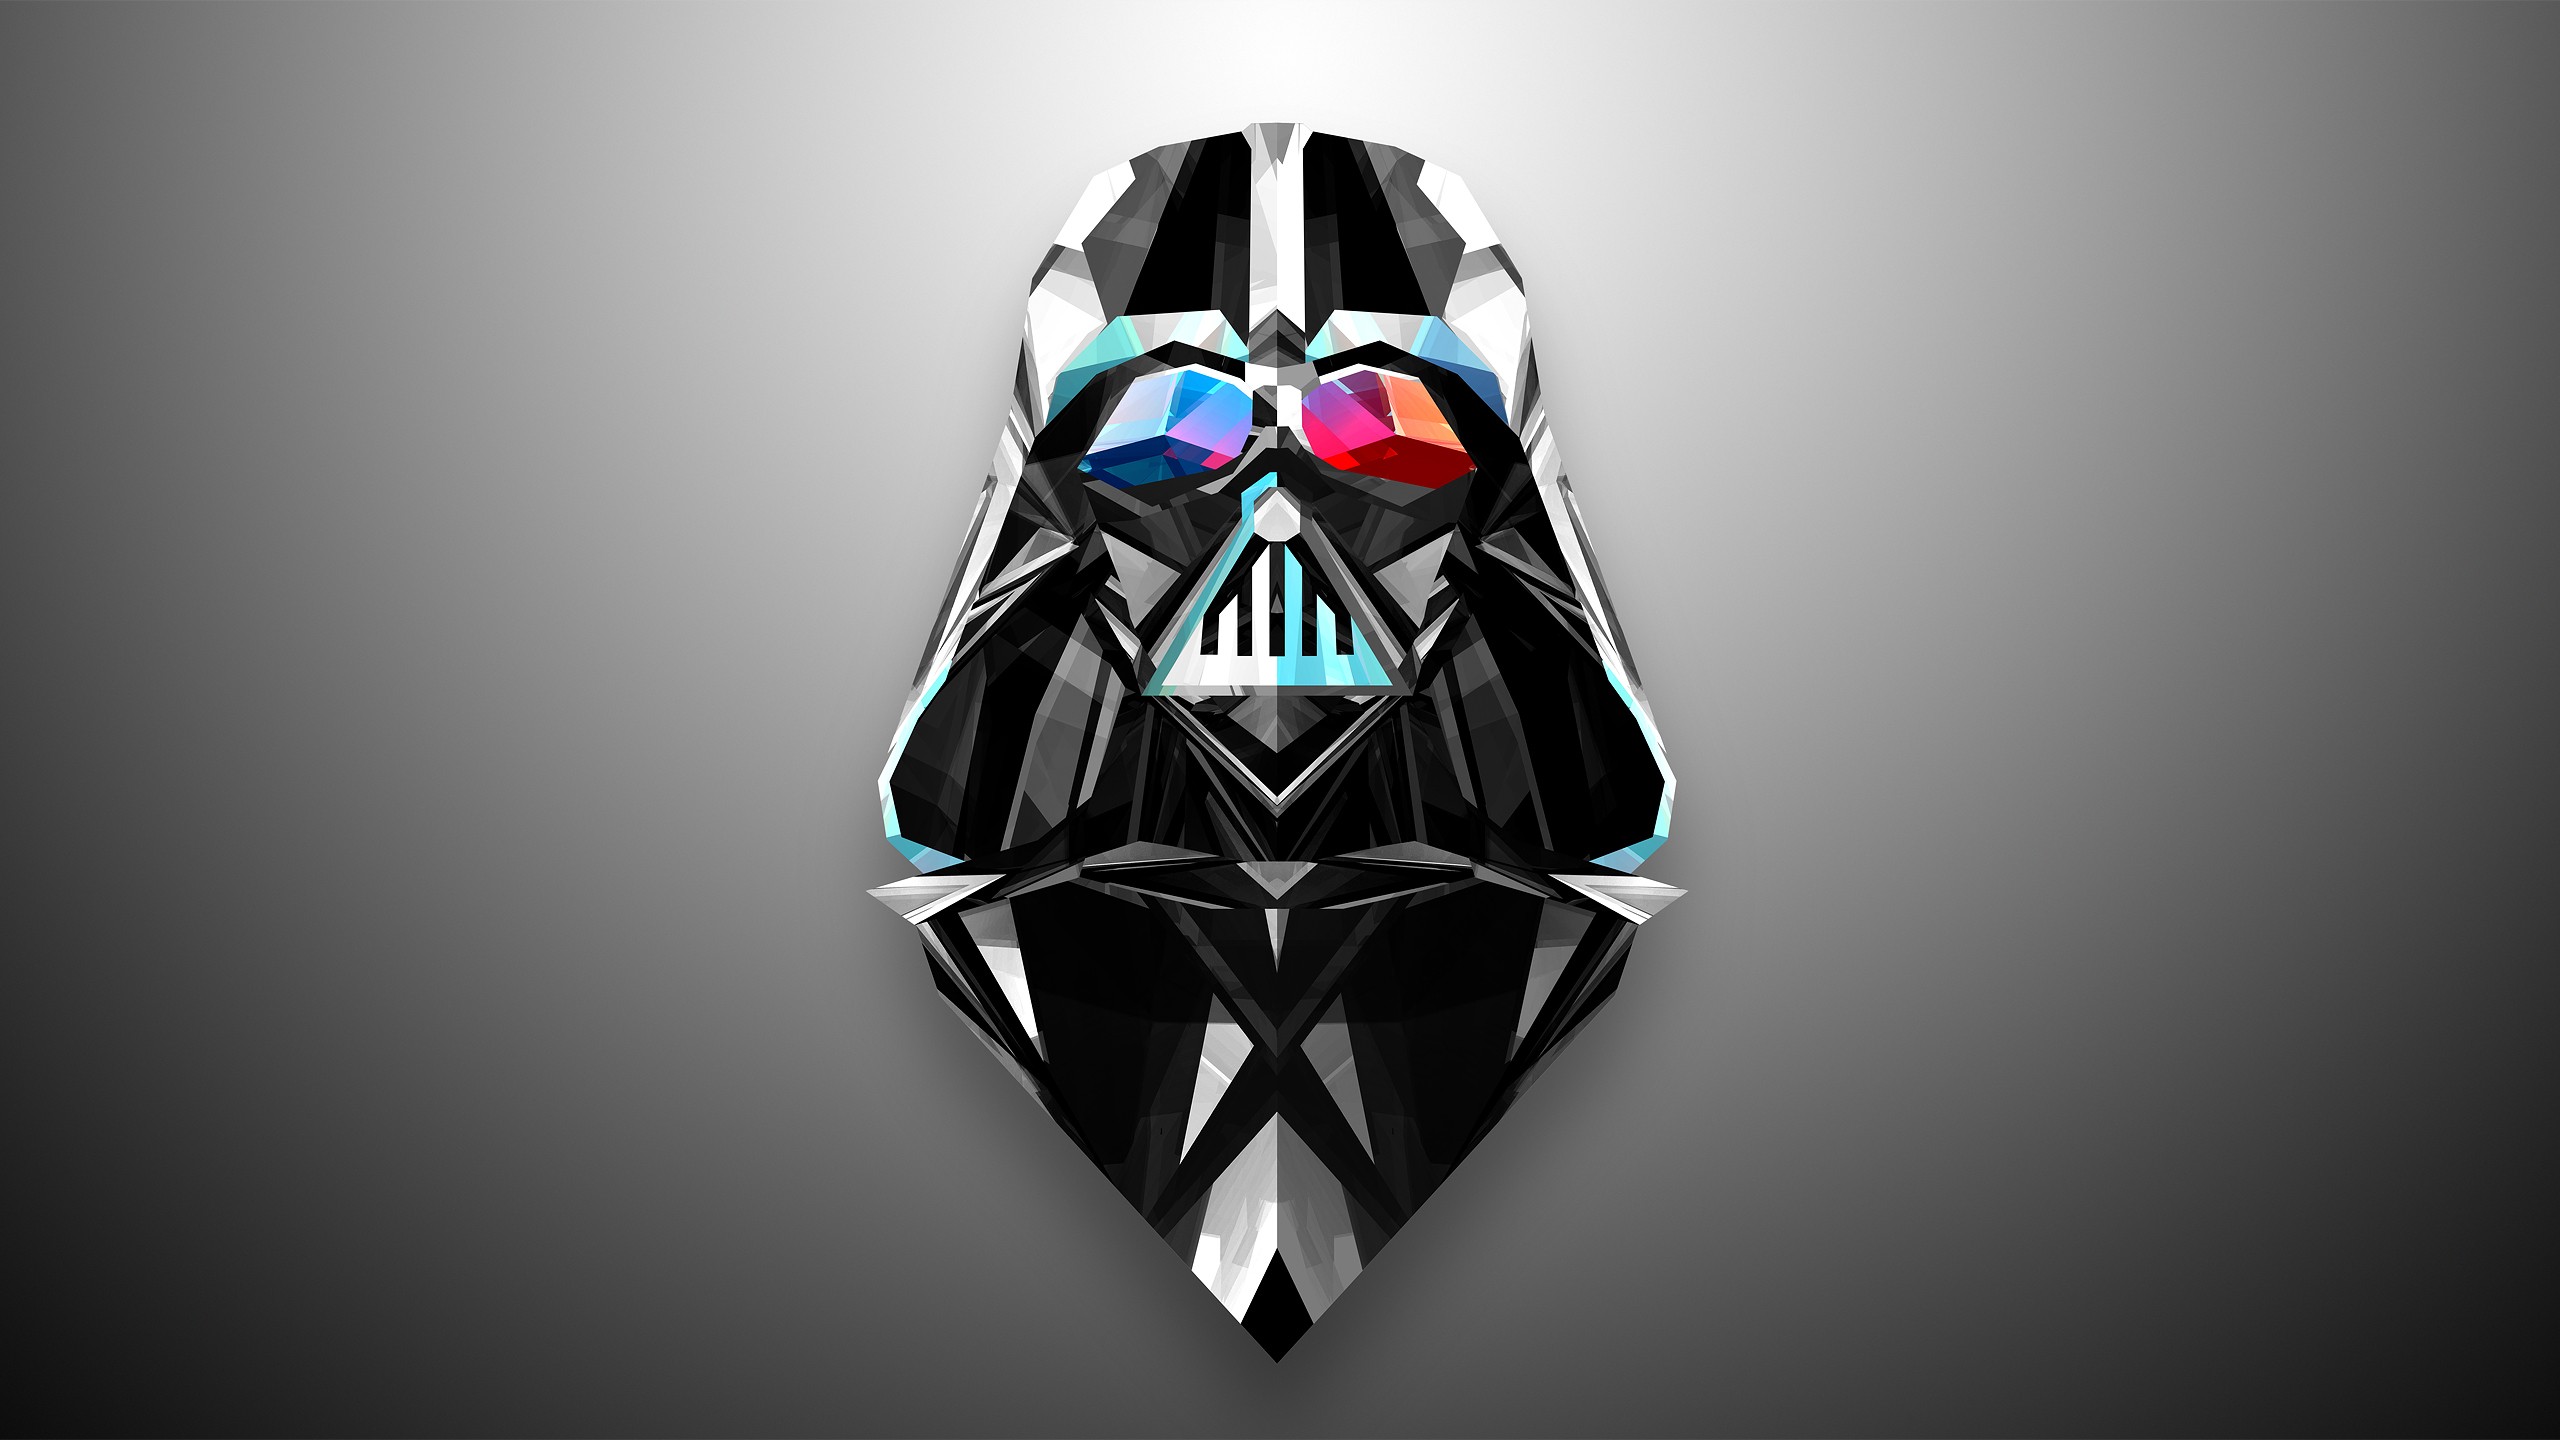 Free Desktop Star Wars Wallpapers | PixelsTalk.Net